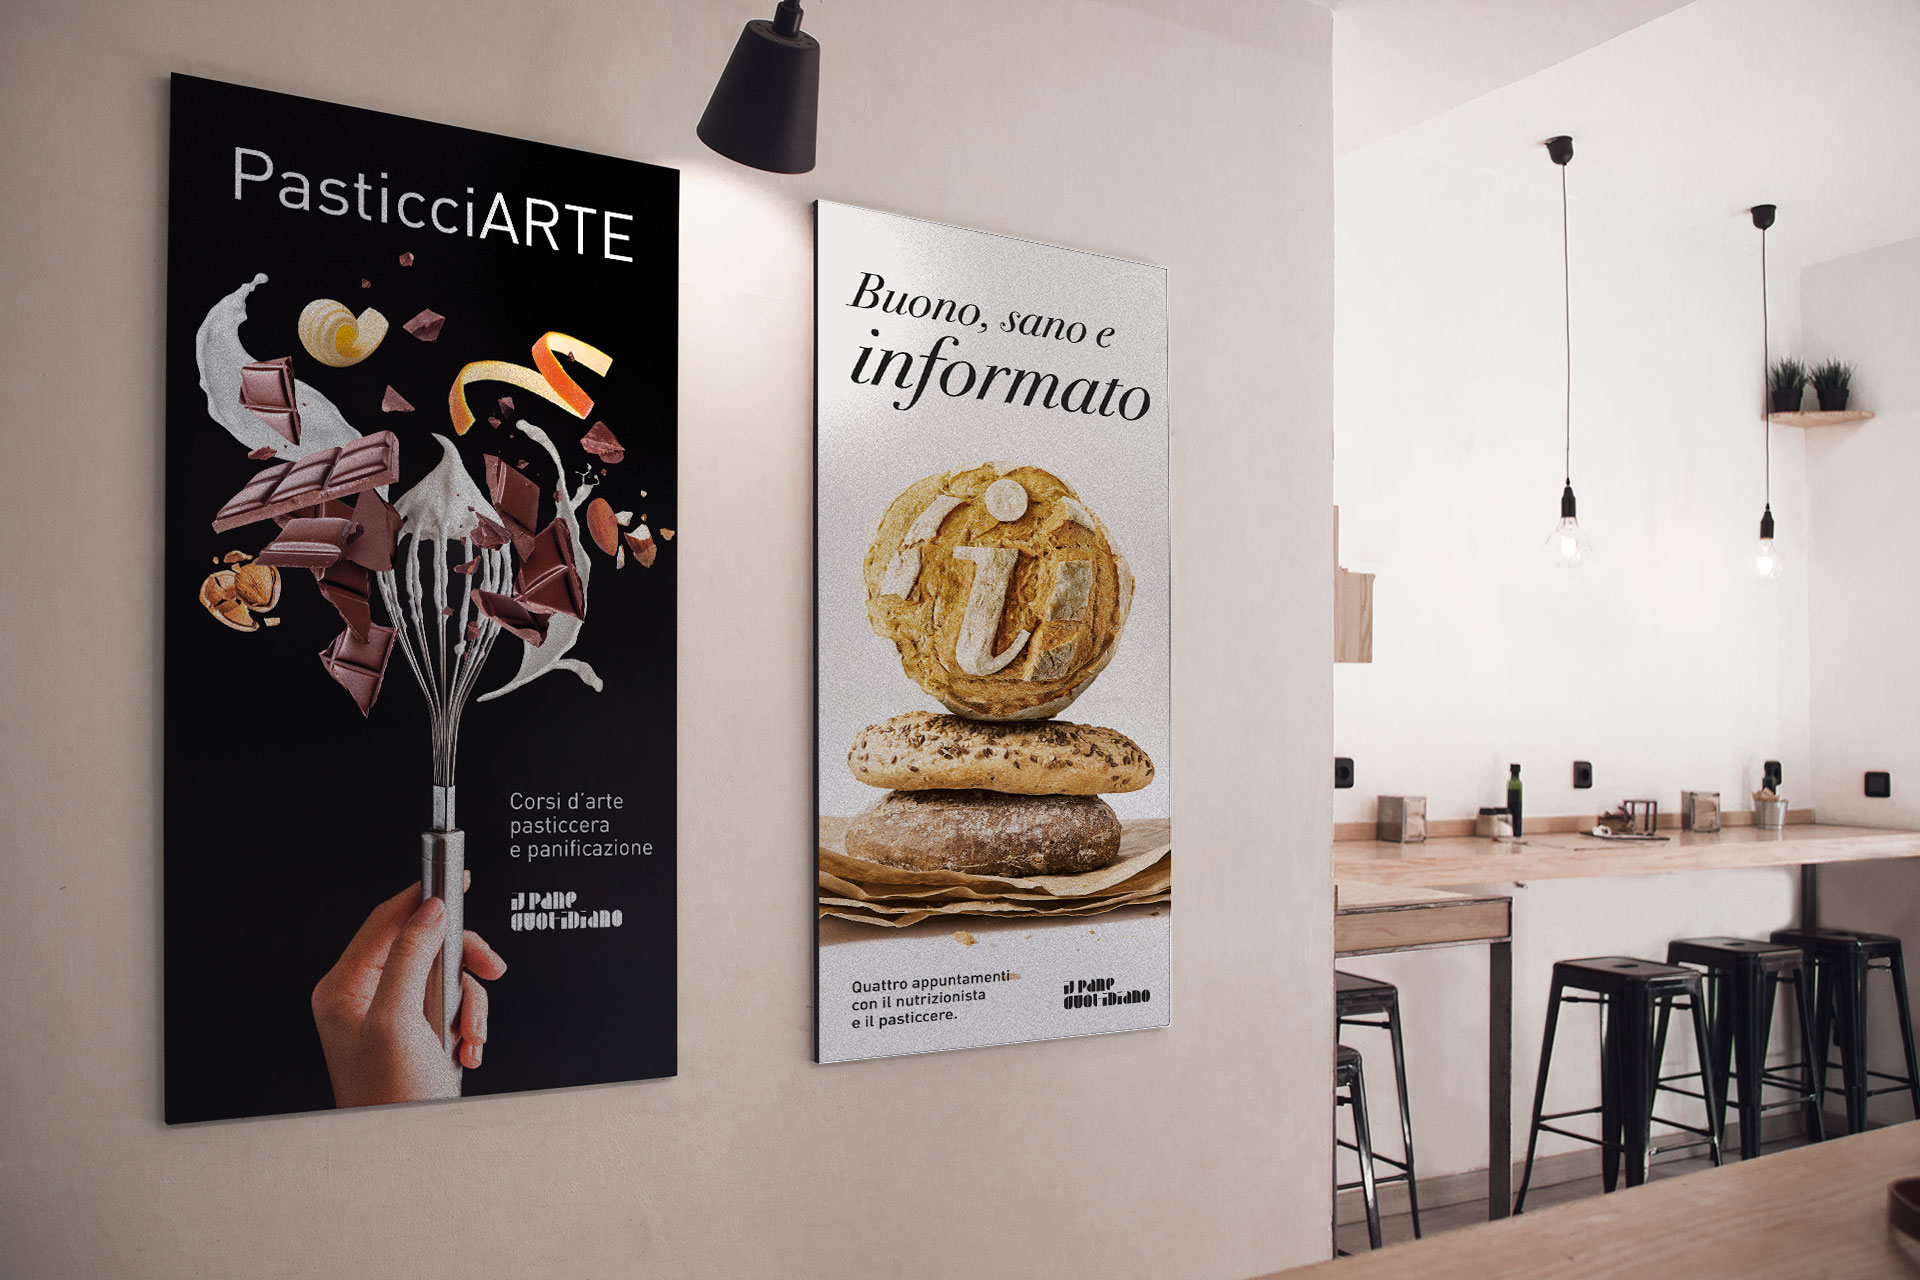 Jade Studio grafico di Trieste, Friuli Venezia Giulia. Realizzazione di campagne pubblicitarie advertising per pasticceria bar caffetteria e ristoranti, strategia di comunicazione efficace per raggiungere e coinvolgere clienti e pubblico. Poster pubblicitario